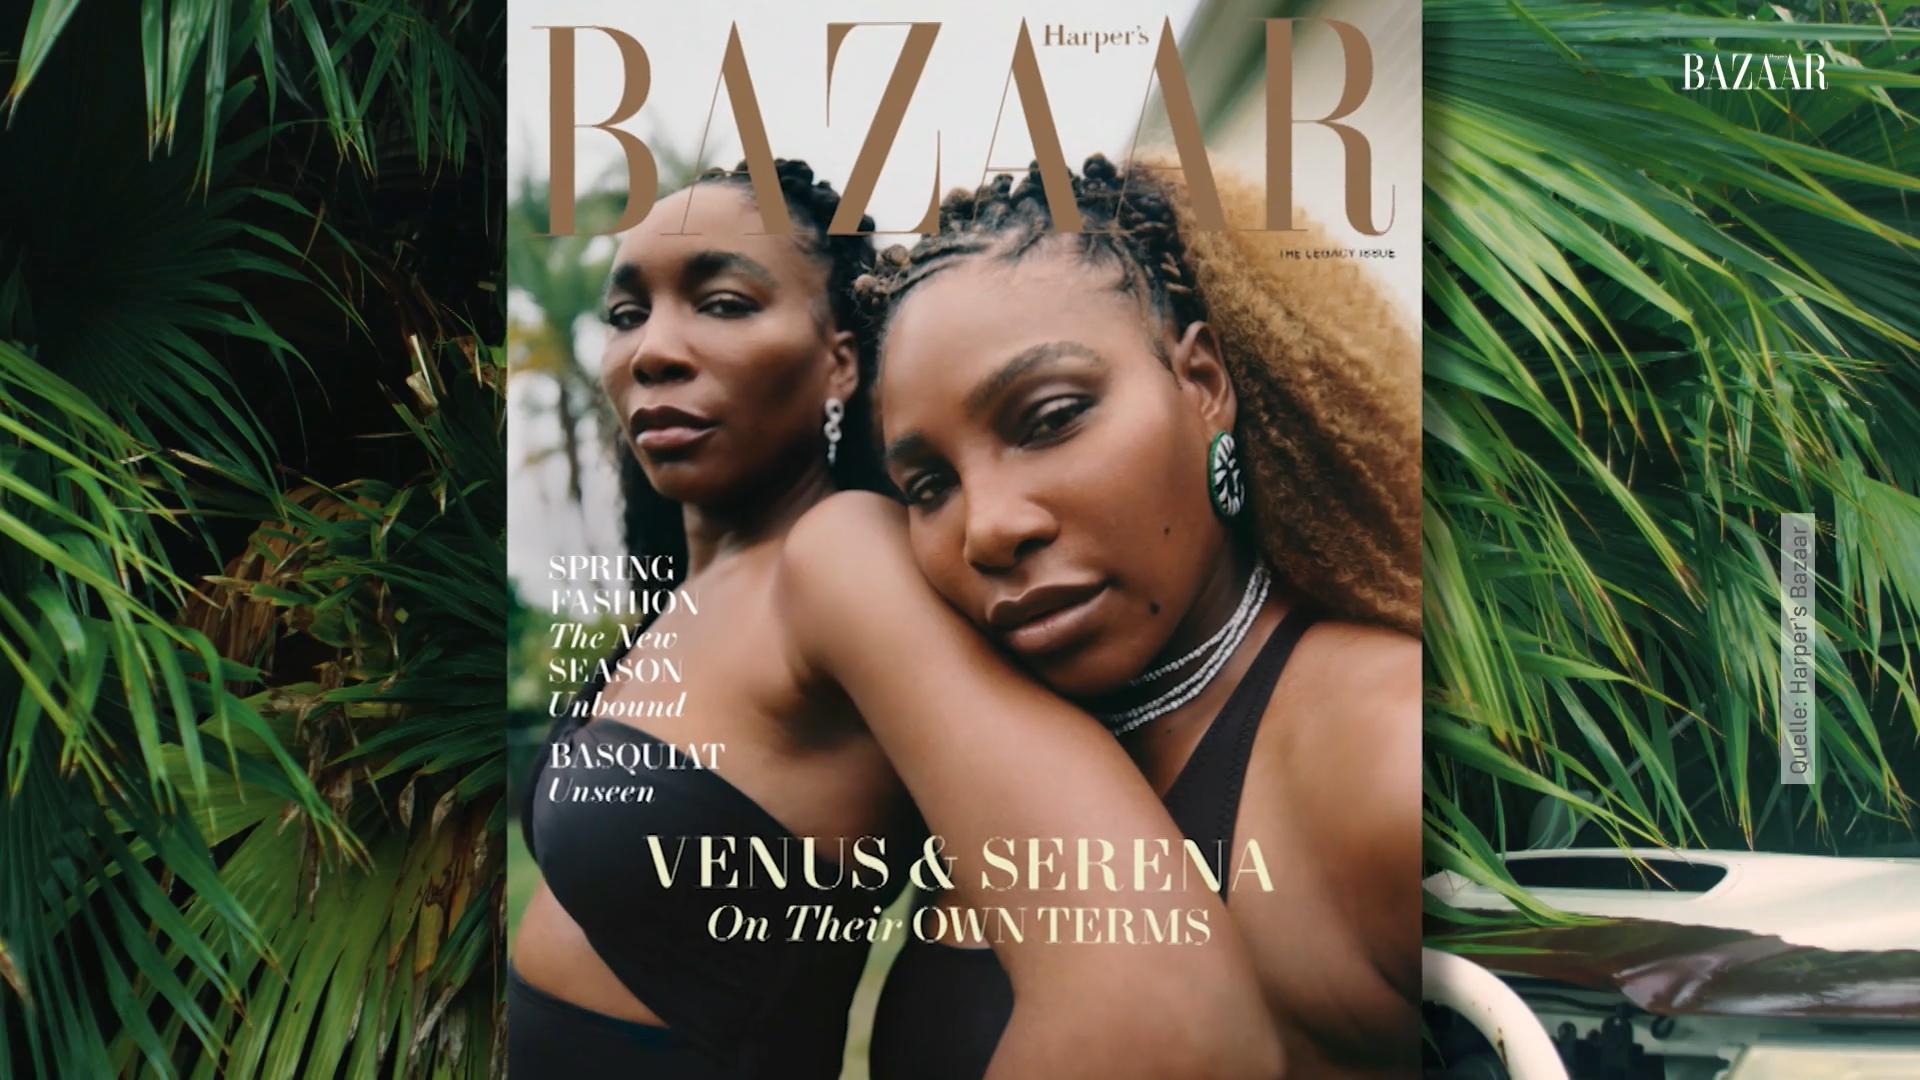 Venus und Serena Williams strahlen auf Cover Power-Frauen unter sich